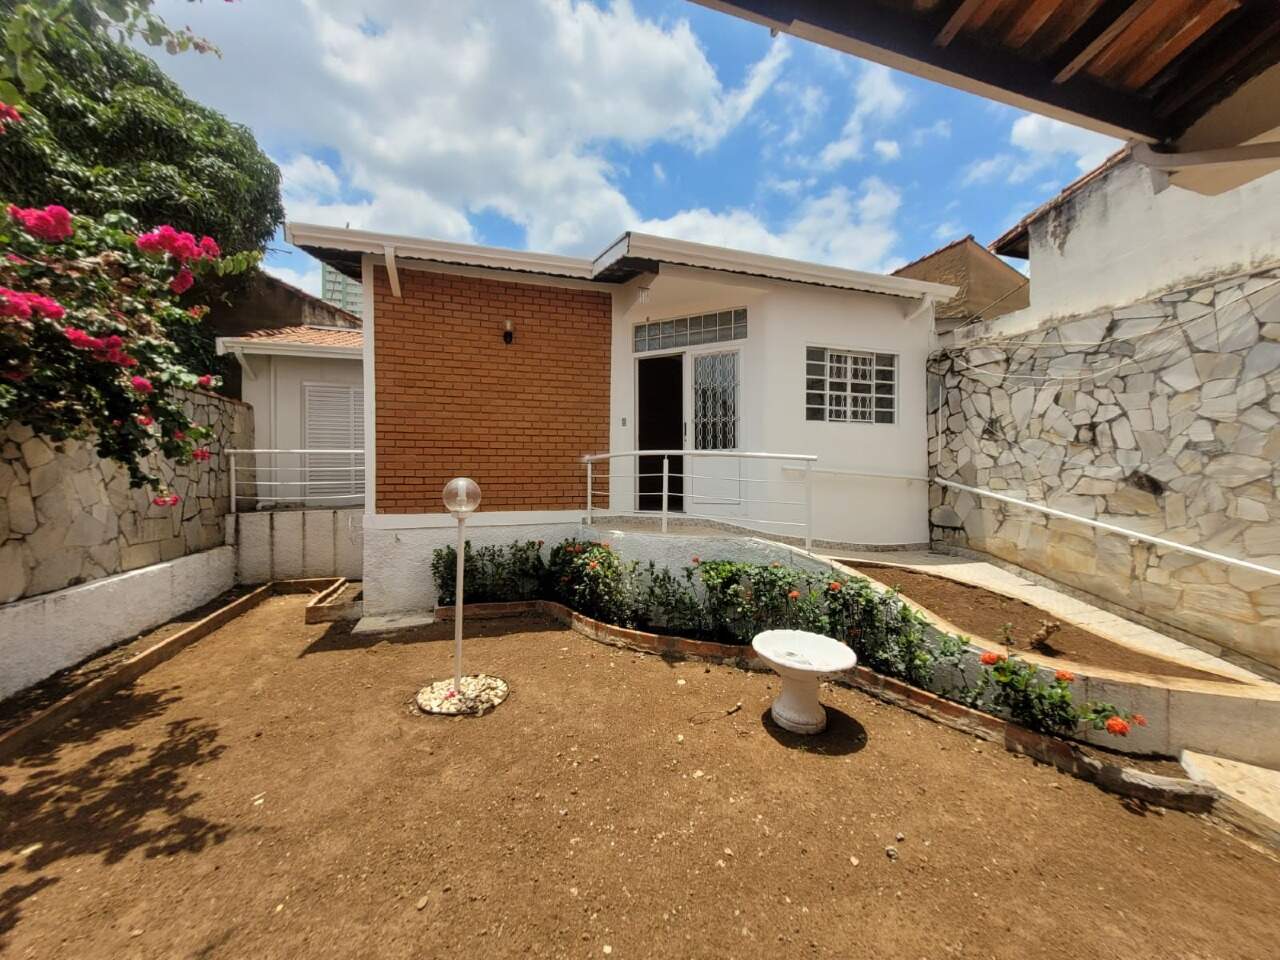 Casa à venda, 5 quartos, sendo 2 suítes, 3 vagas, no bairro Alto em Piracicaba - SP